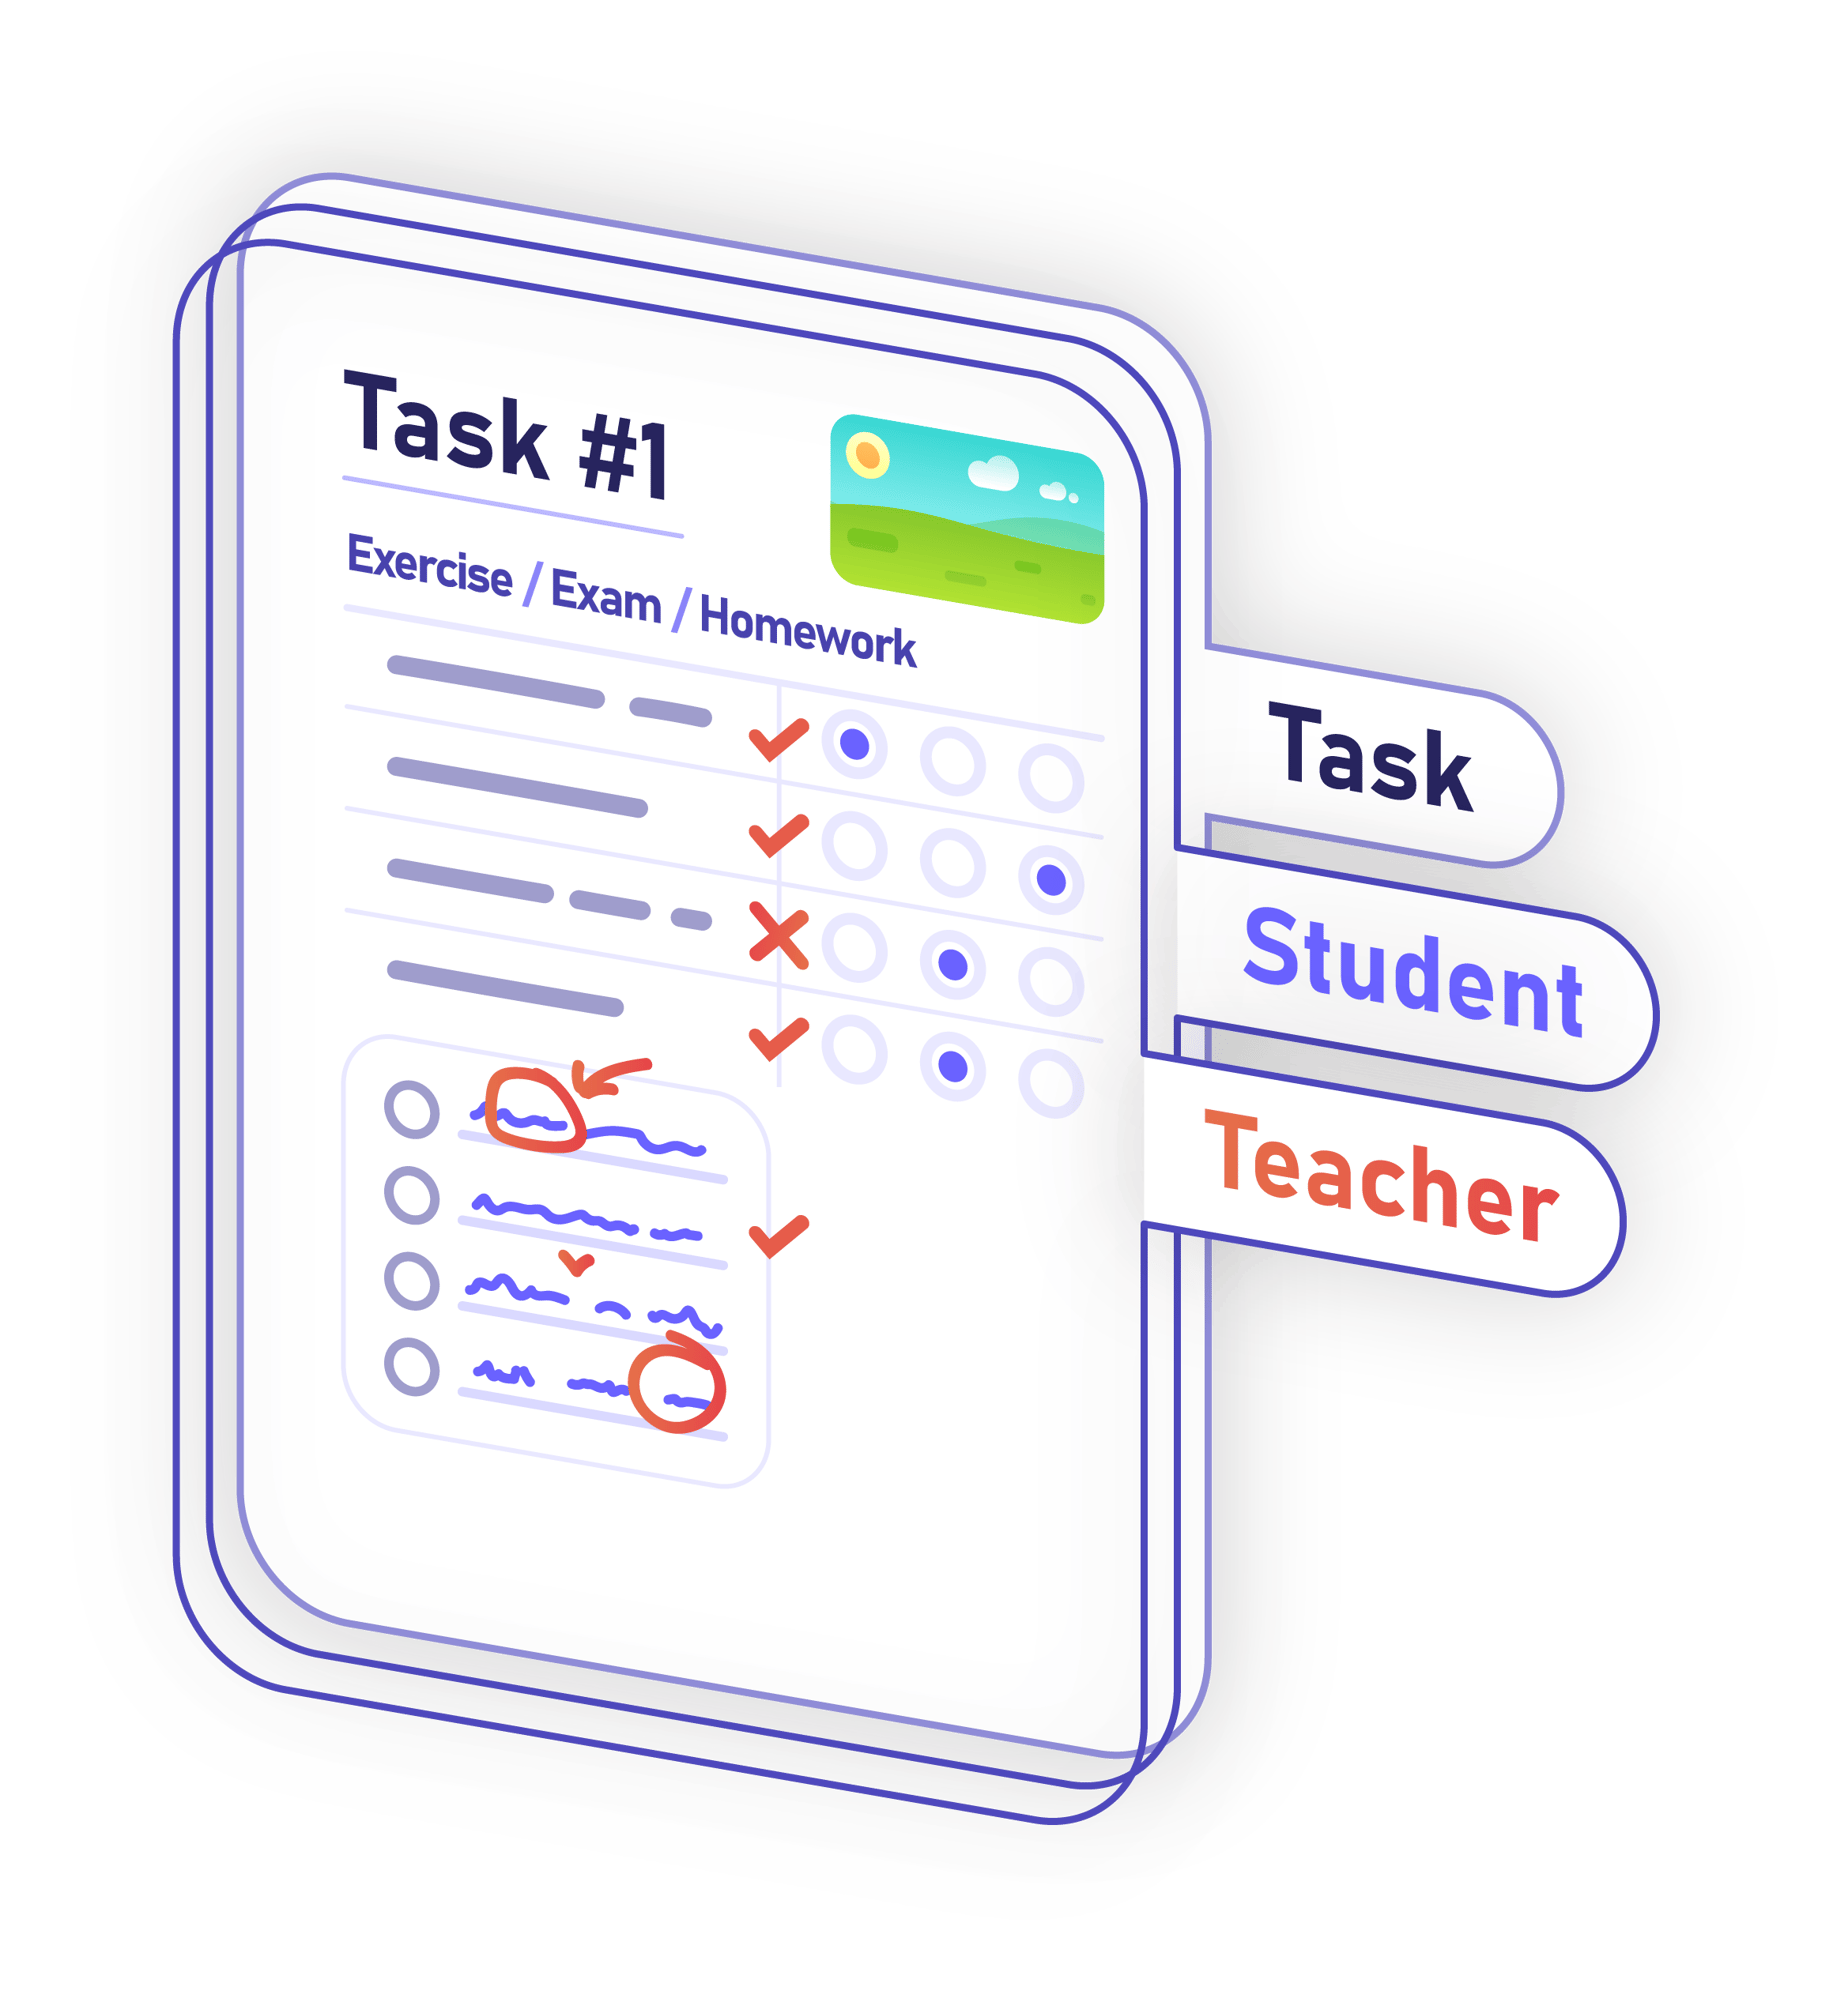 Task teacher student overlay together